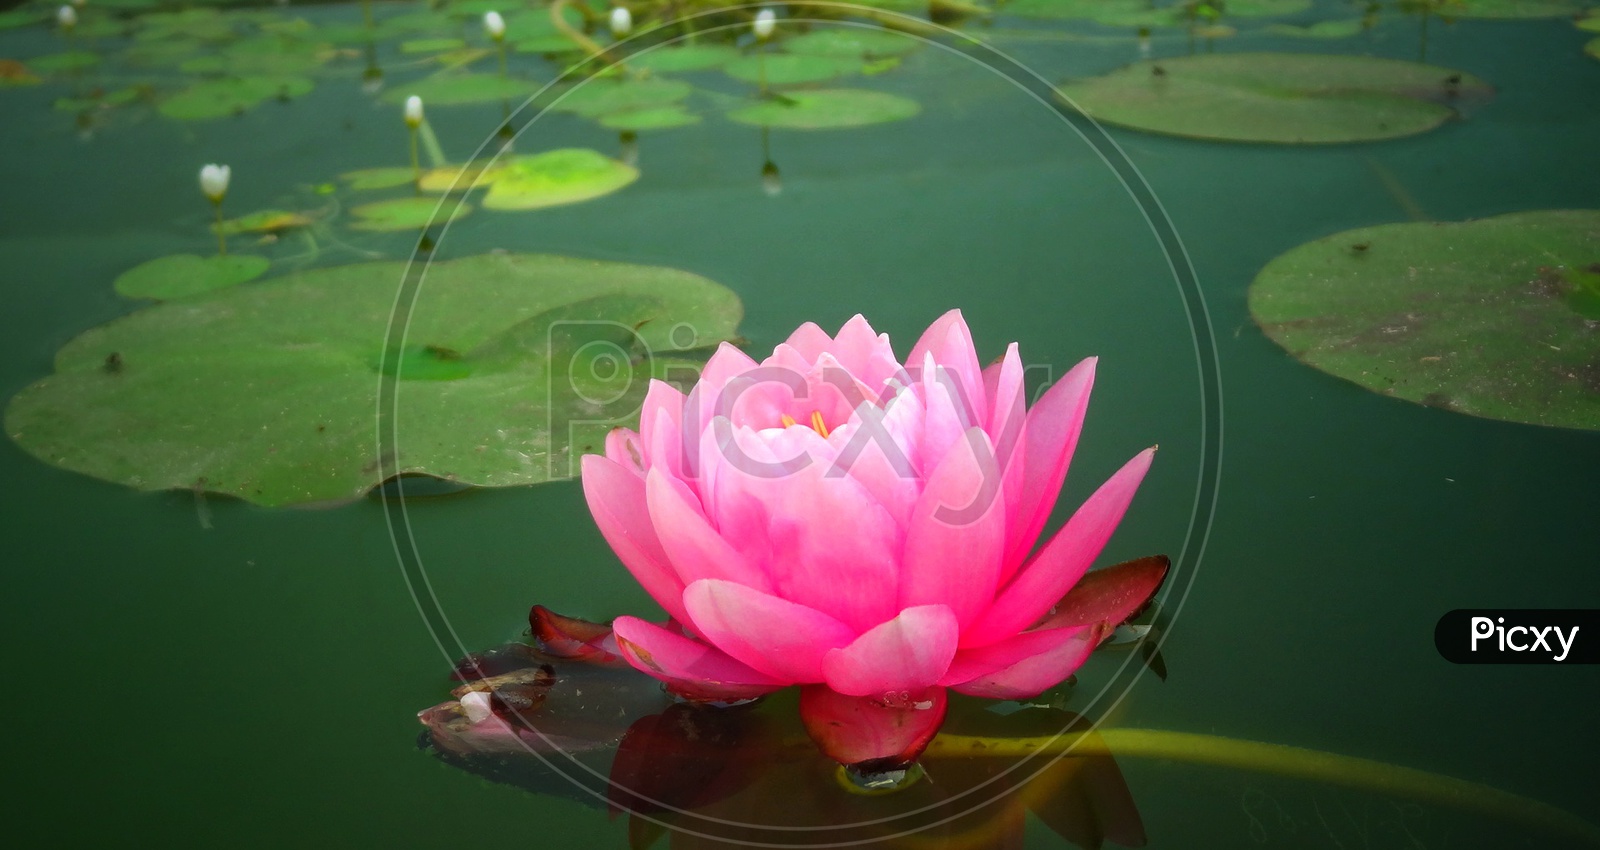 A pink Lotus